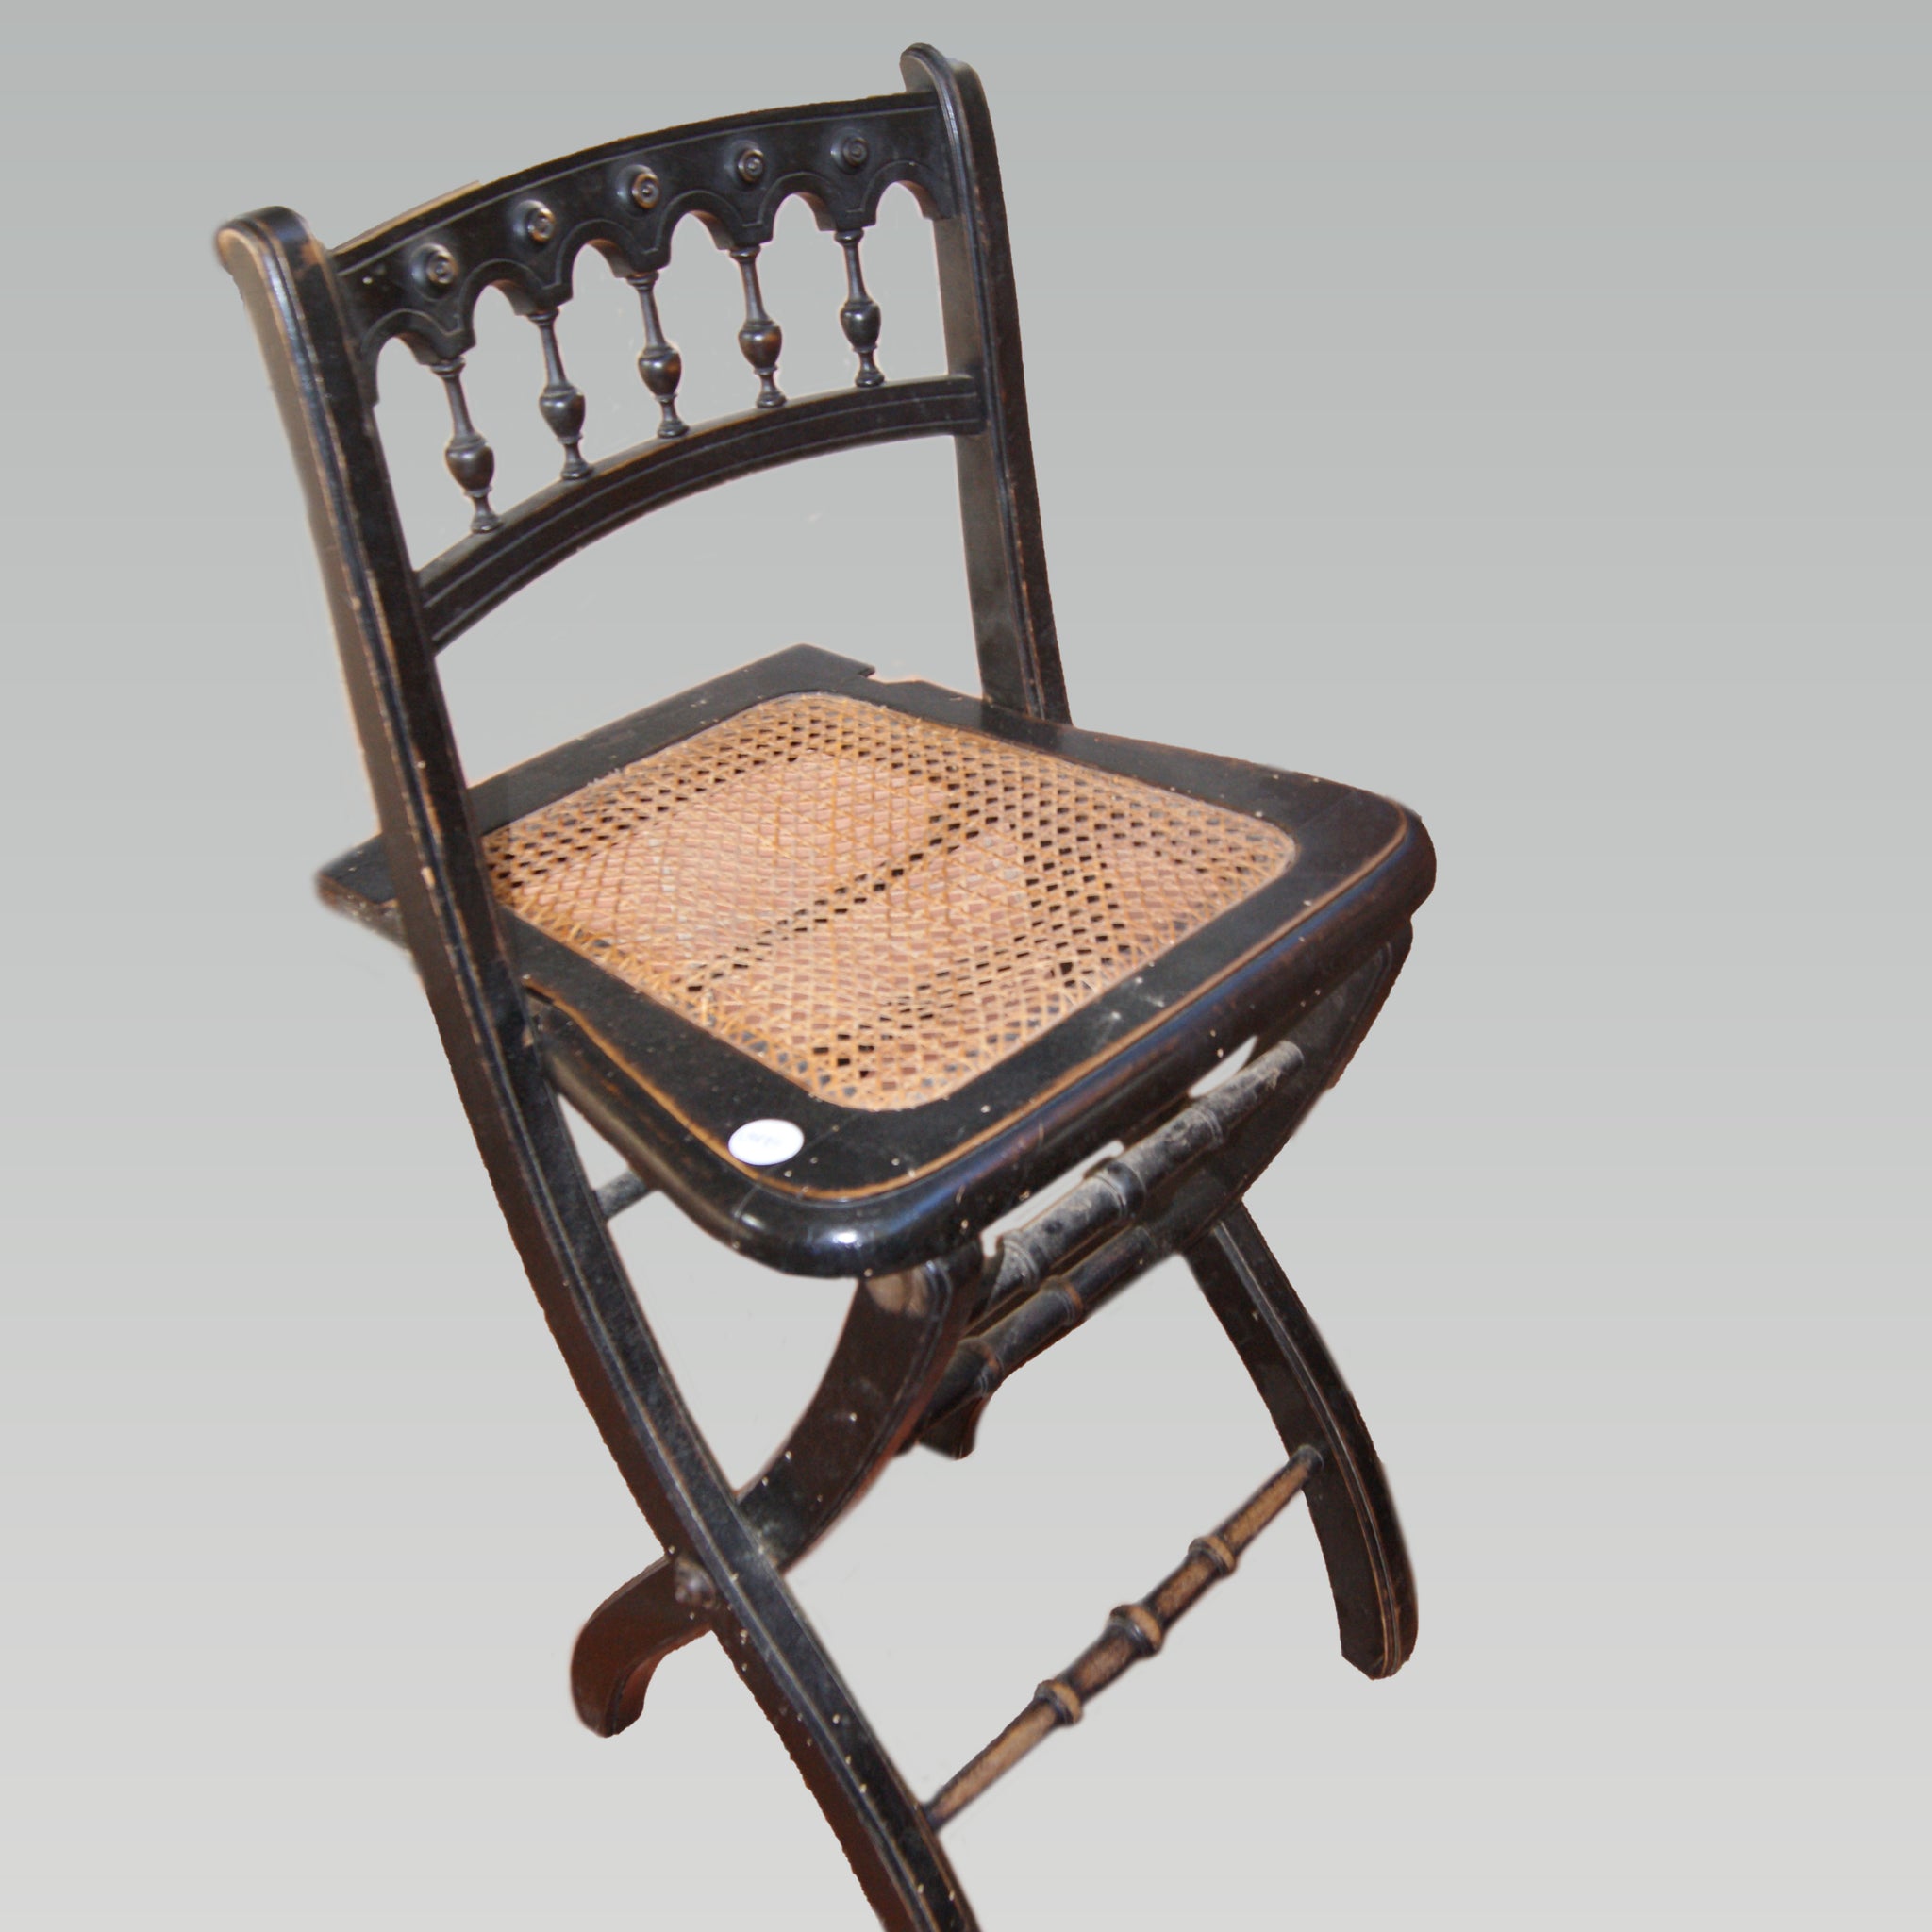 Sgabello alto di fine 1800 in legno ebanizzato con seduta impagliata